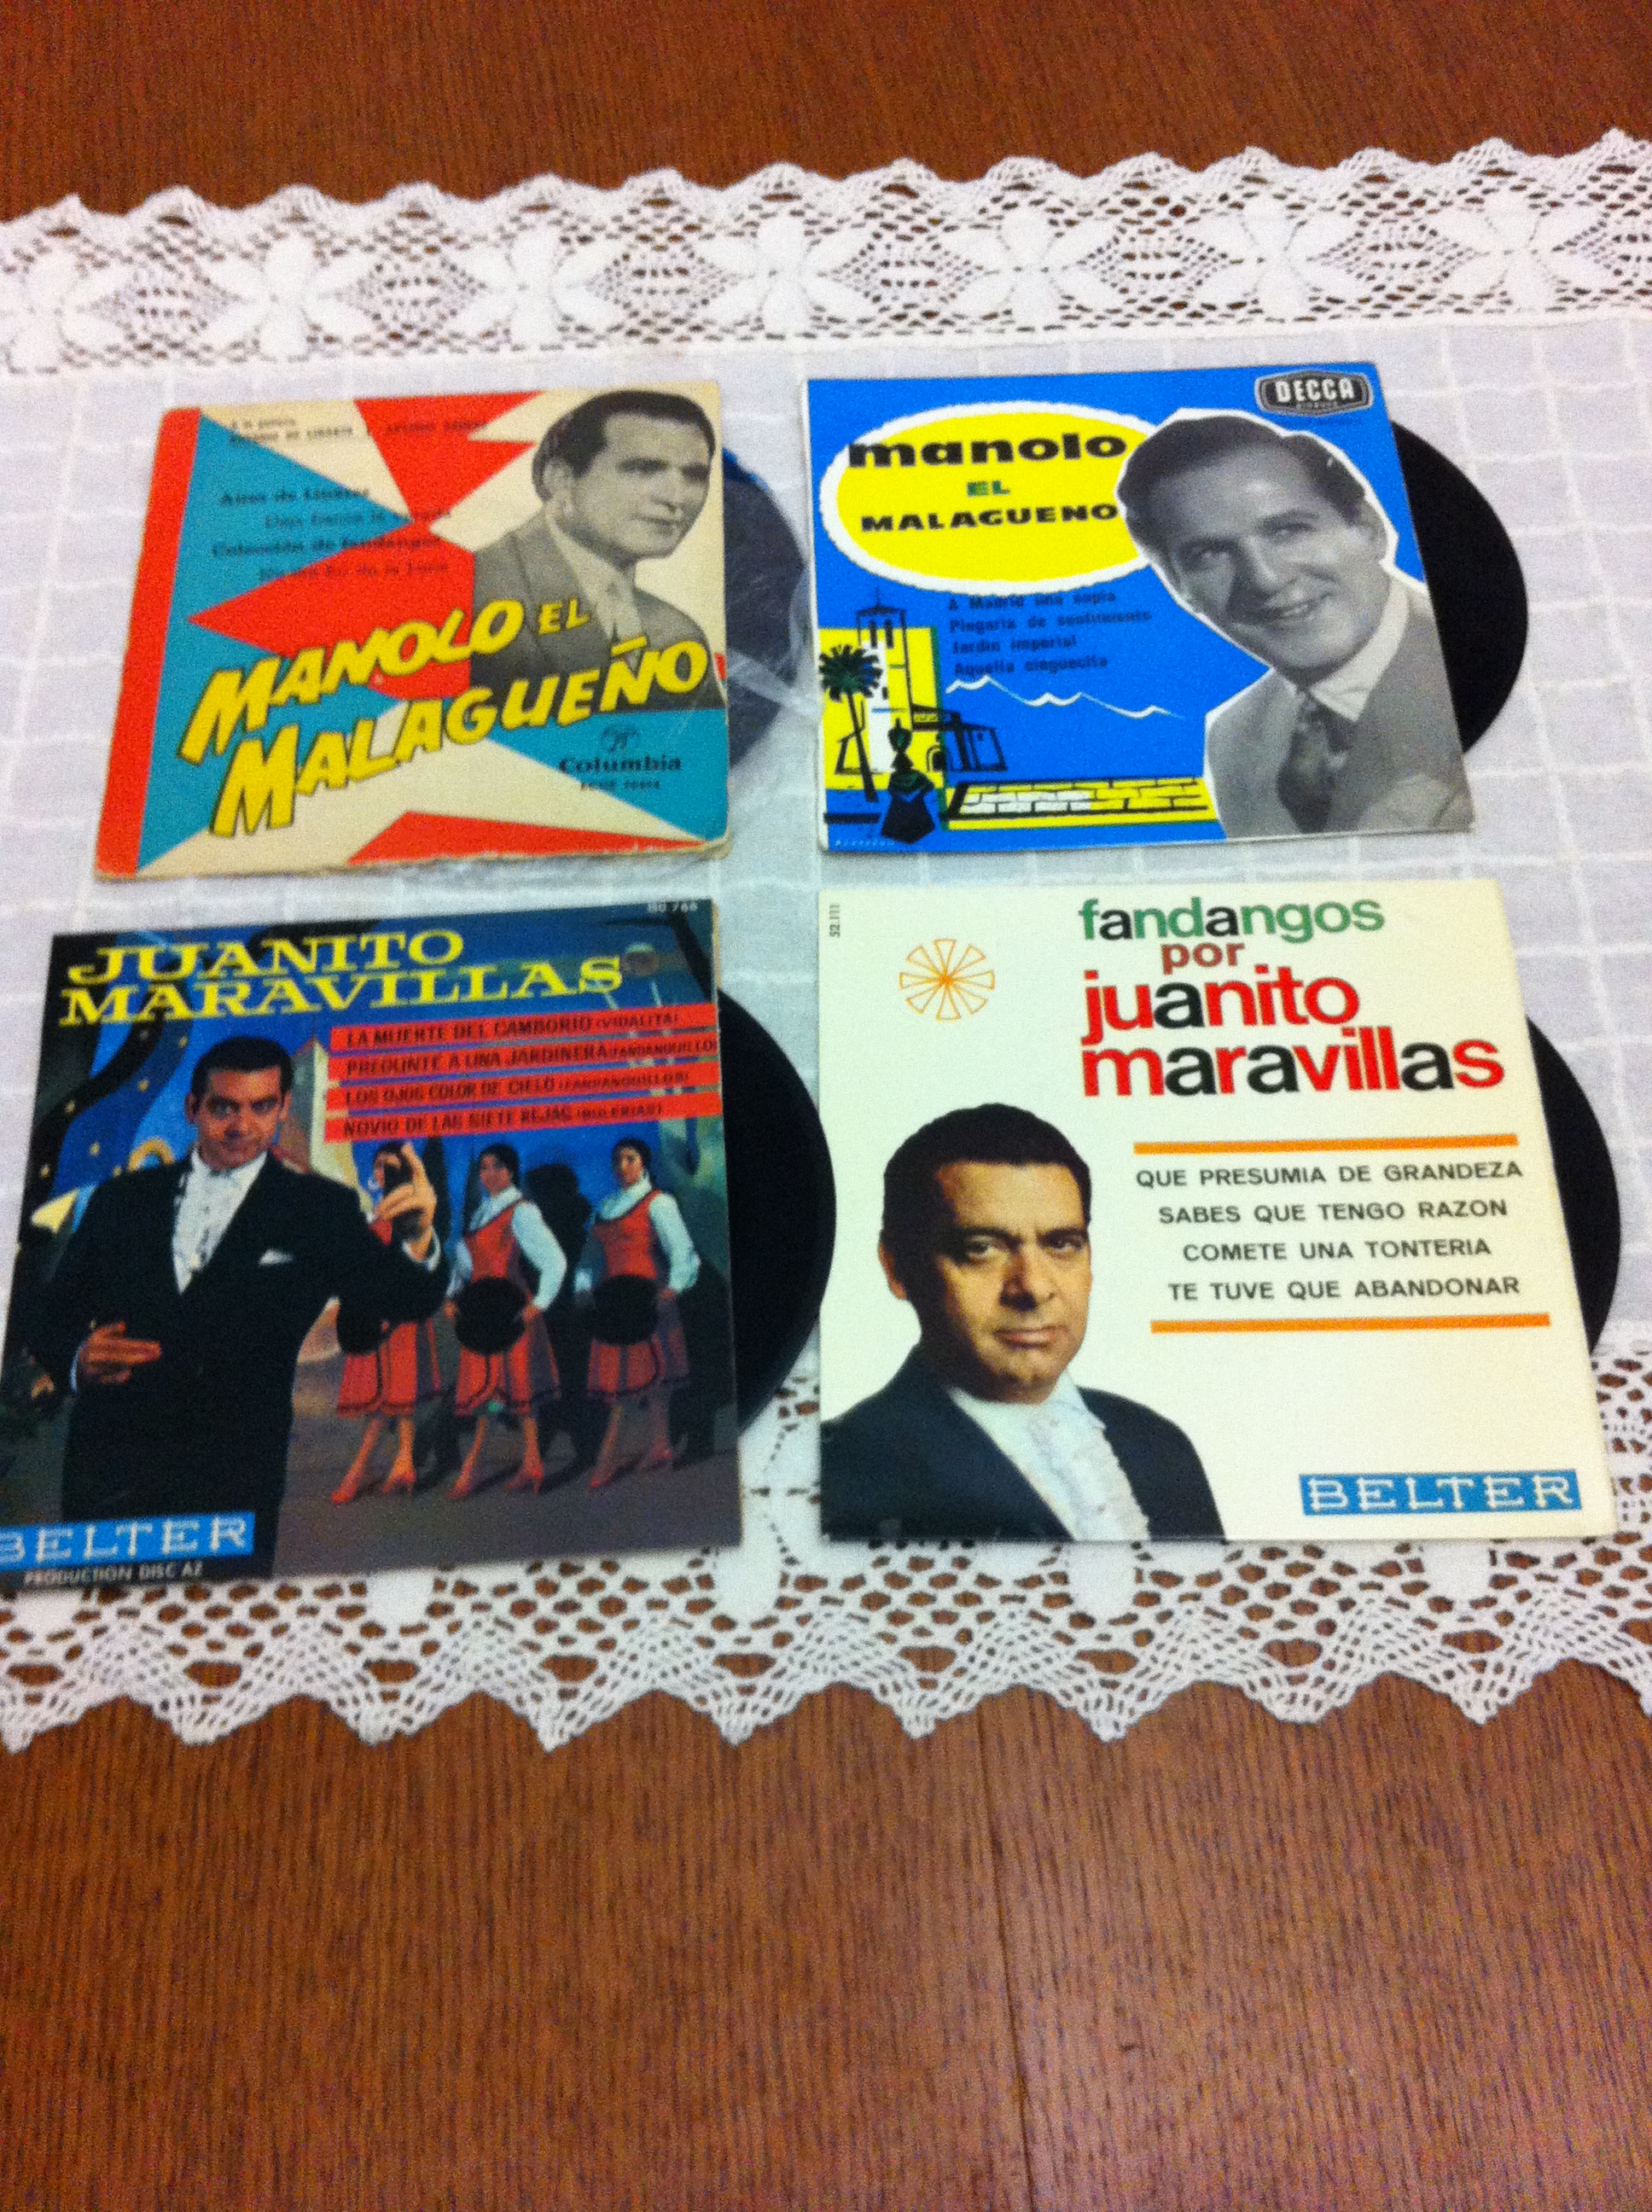 Flamenco cassette et disque vinyle   - Page 3 14022310062814950712010084